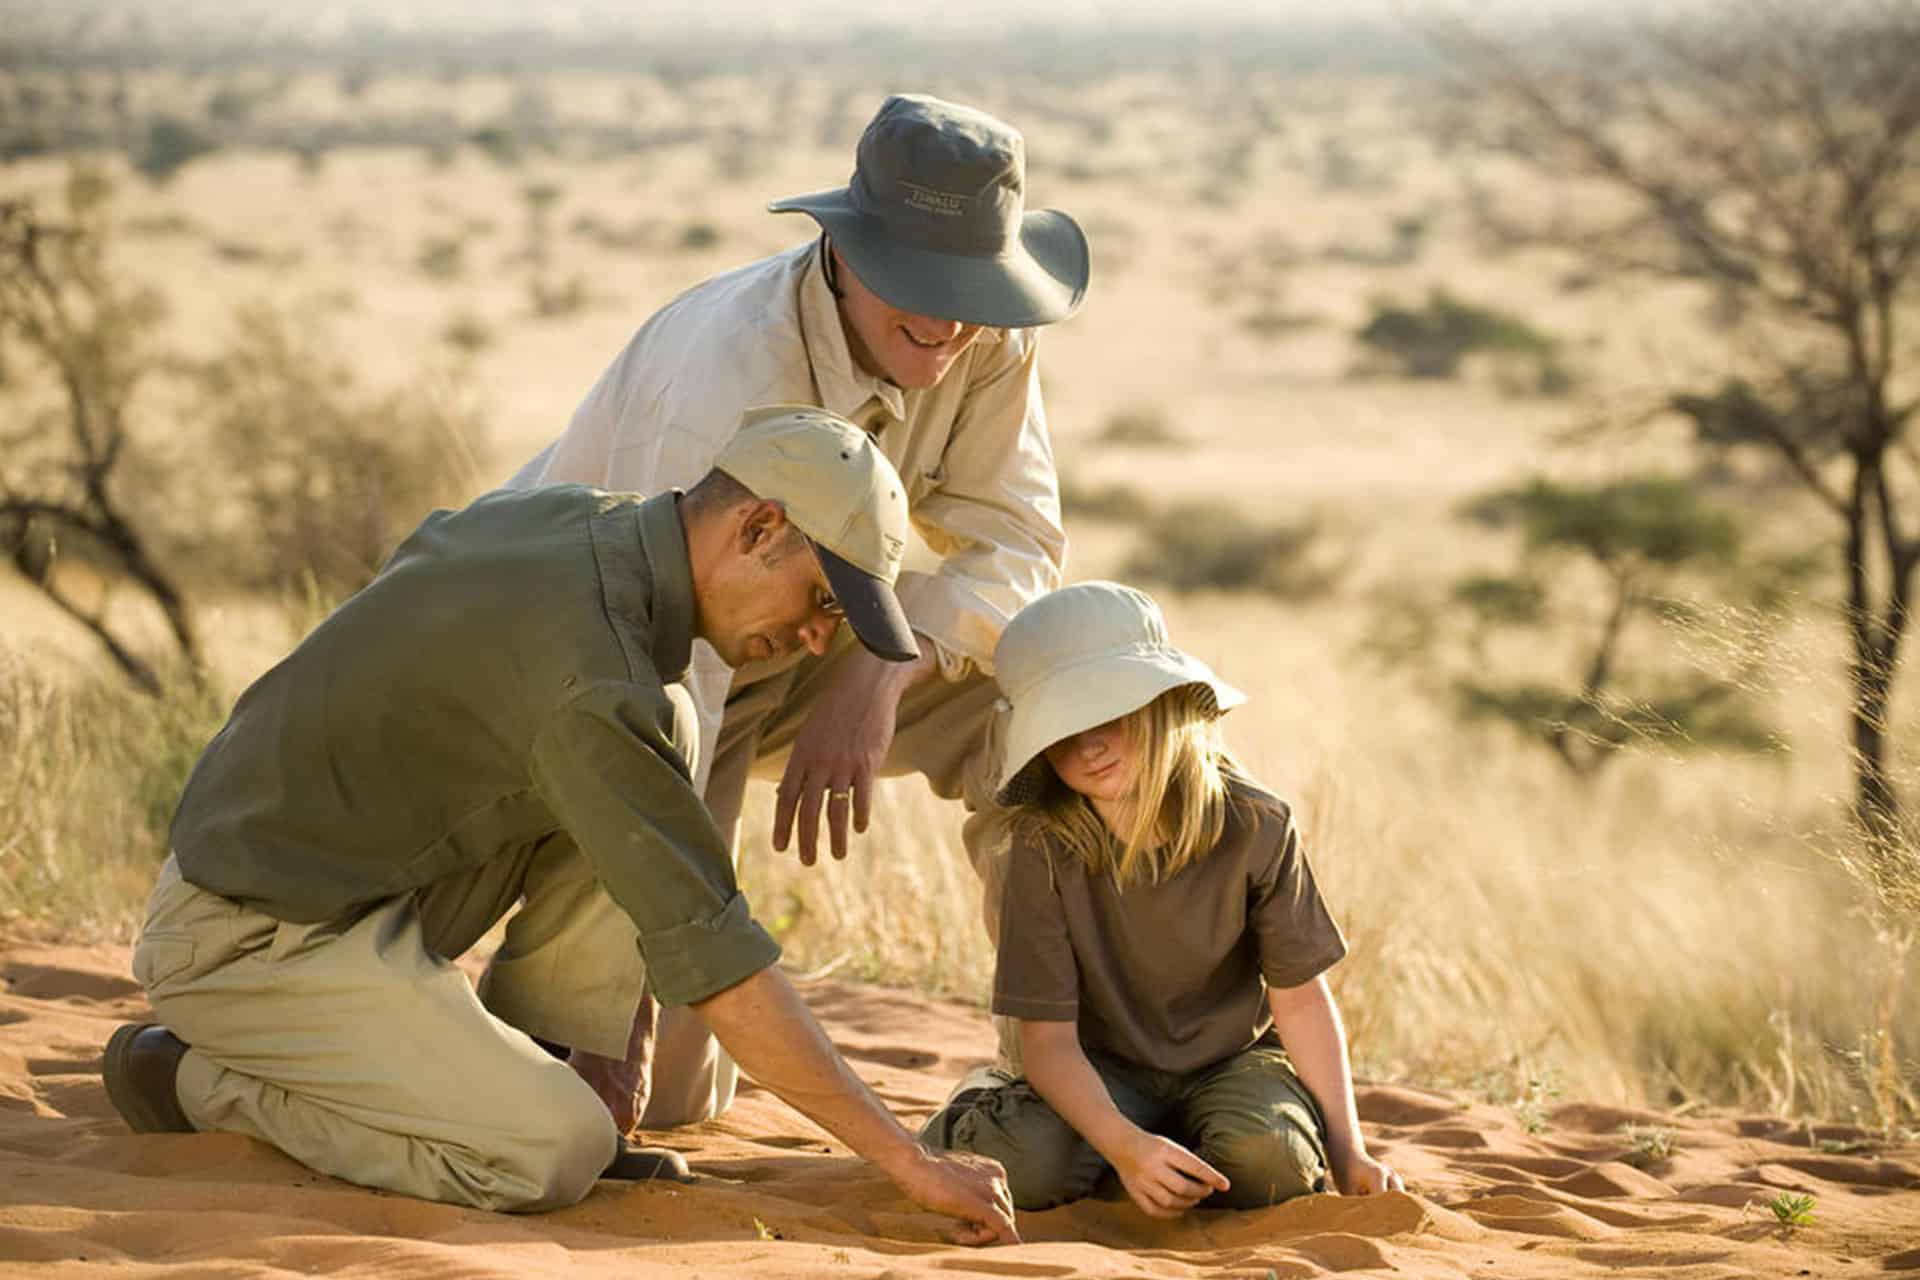 Learning to identify spoor at Tswalu Kalahari taken during an African safari with children